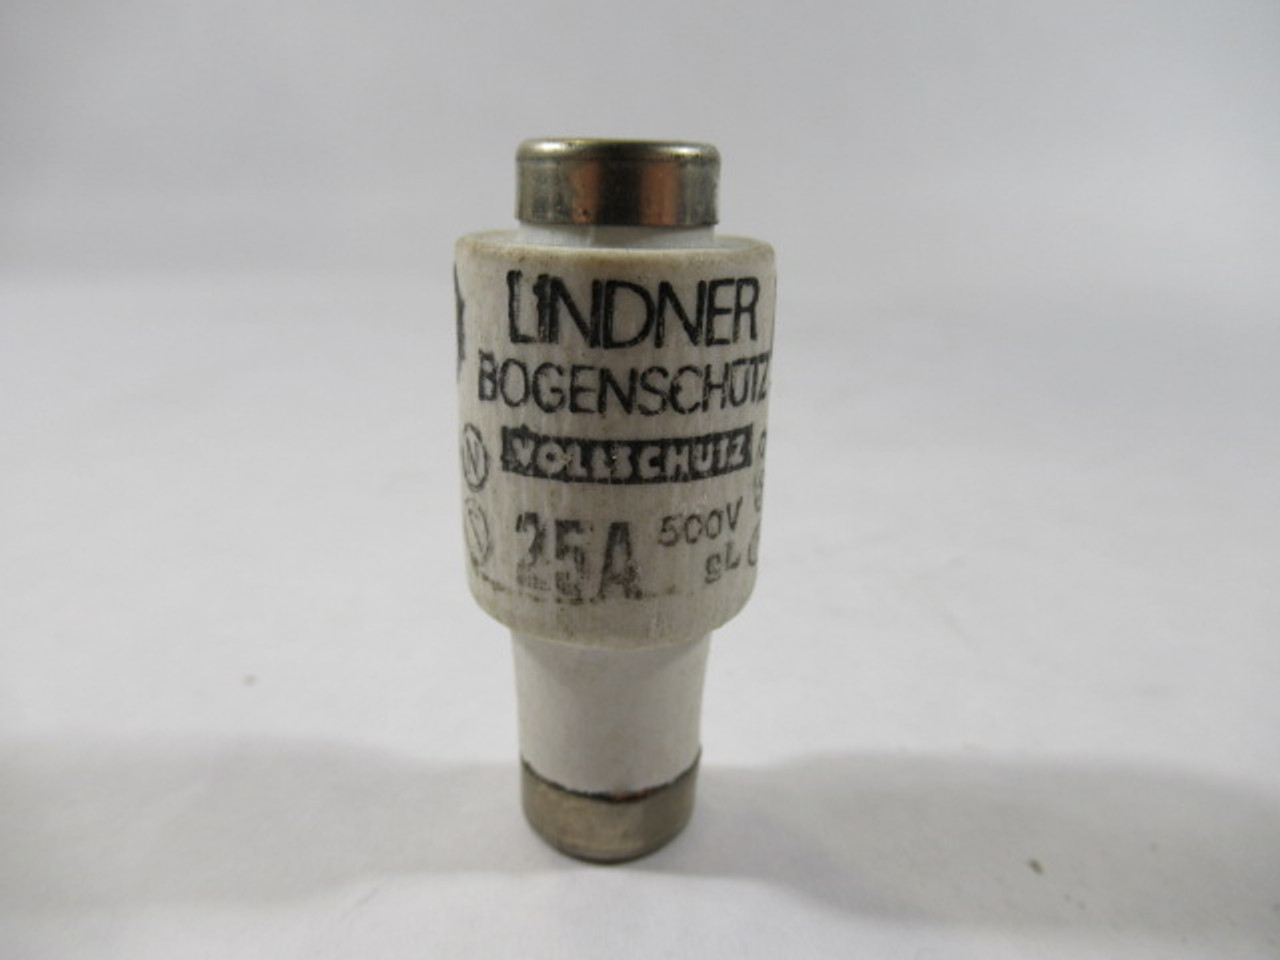 Lindner 597.0257 Ceramic Bottle Fuse LG7 25A 500V USED